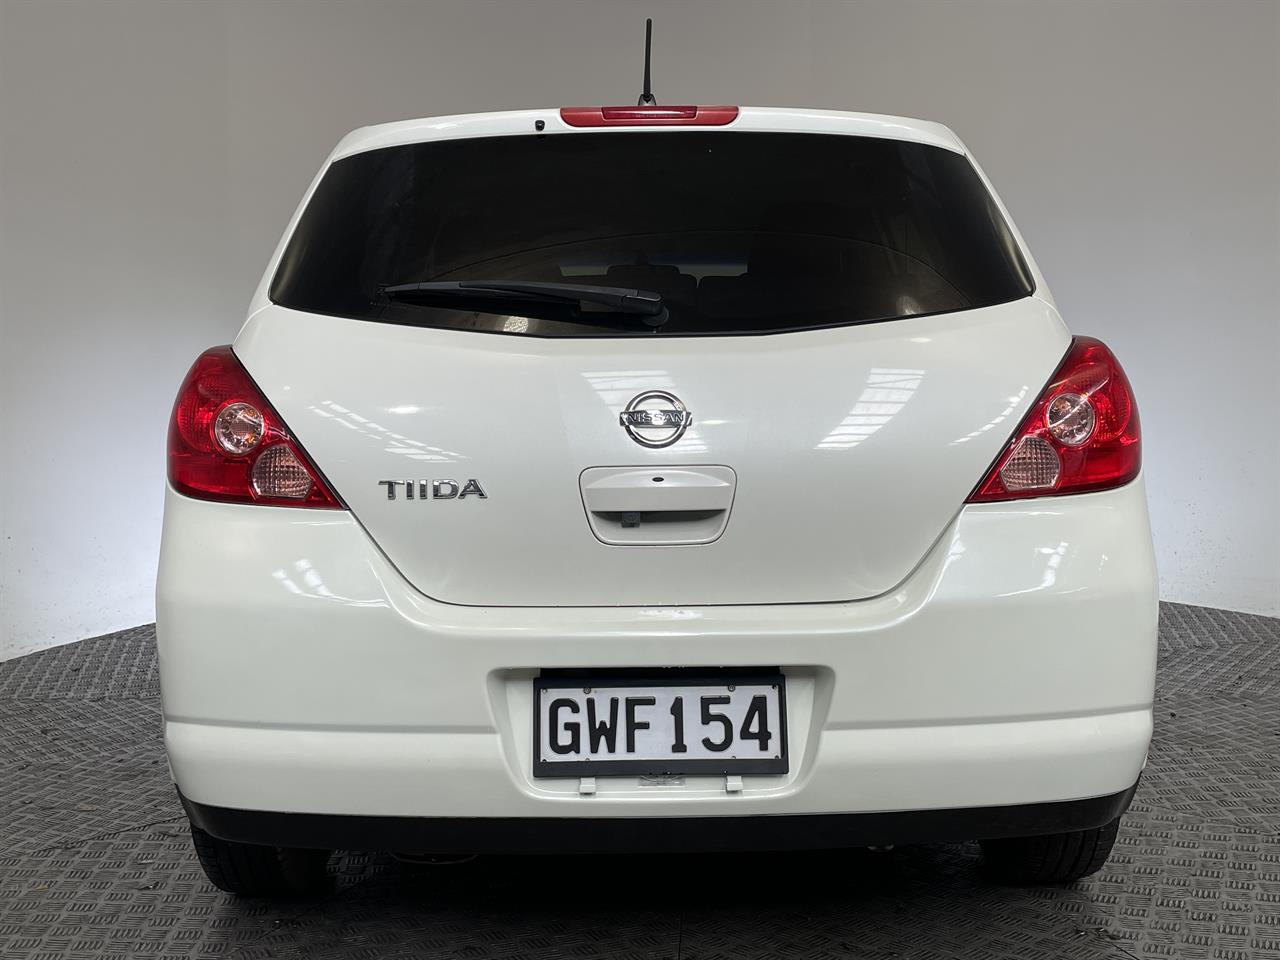 2006 Nissan Tiida